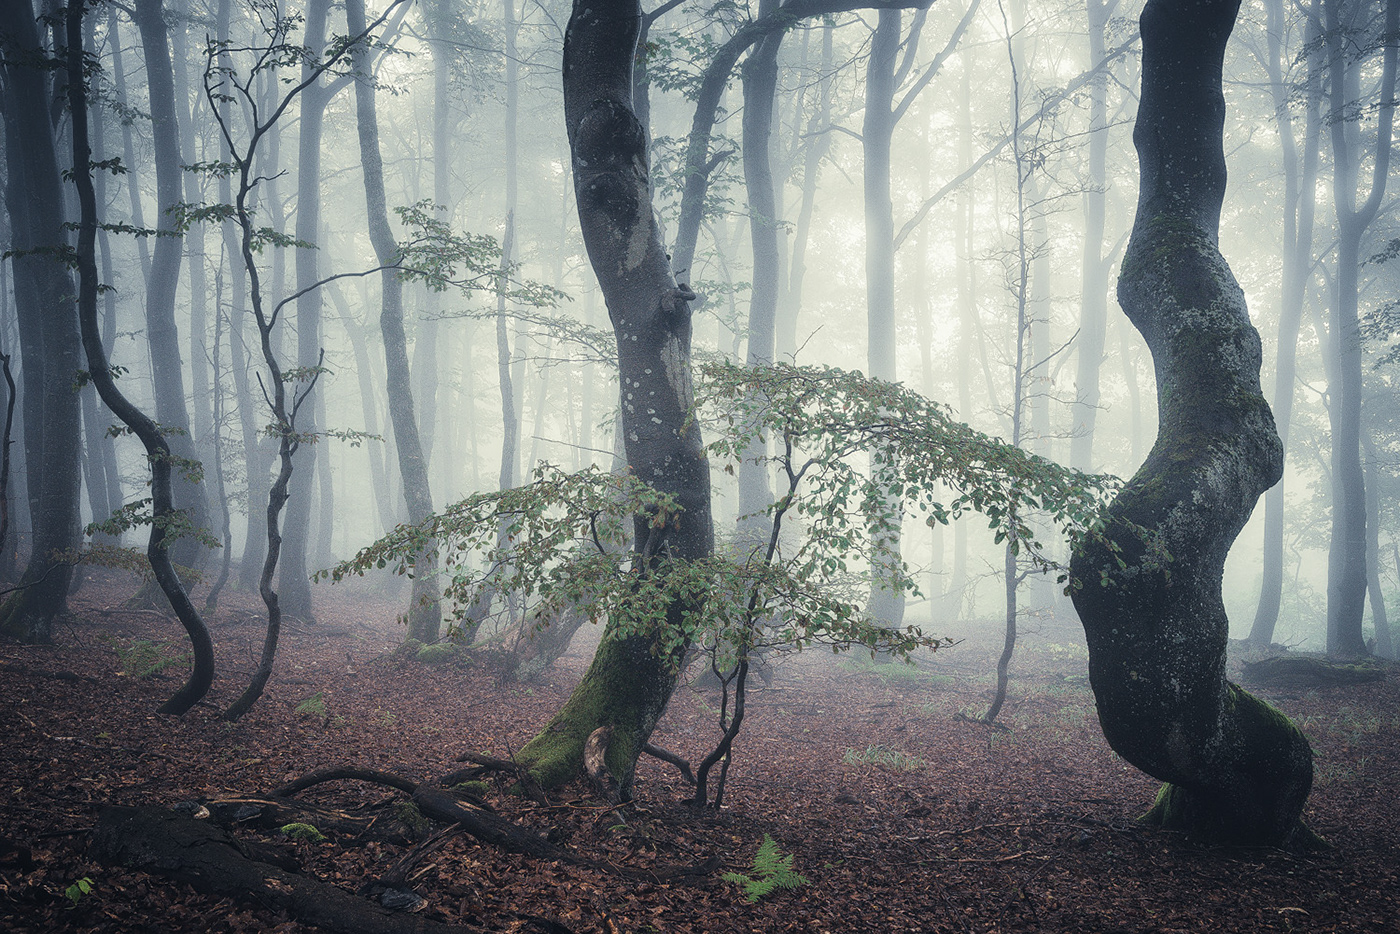 forest wood trees fog mist mood Rhoen germany Landscape